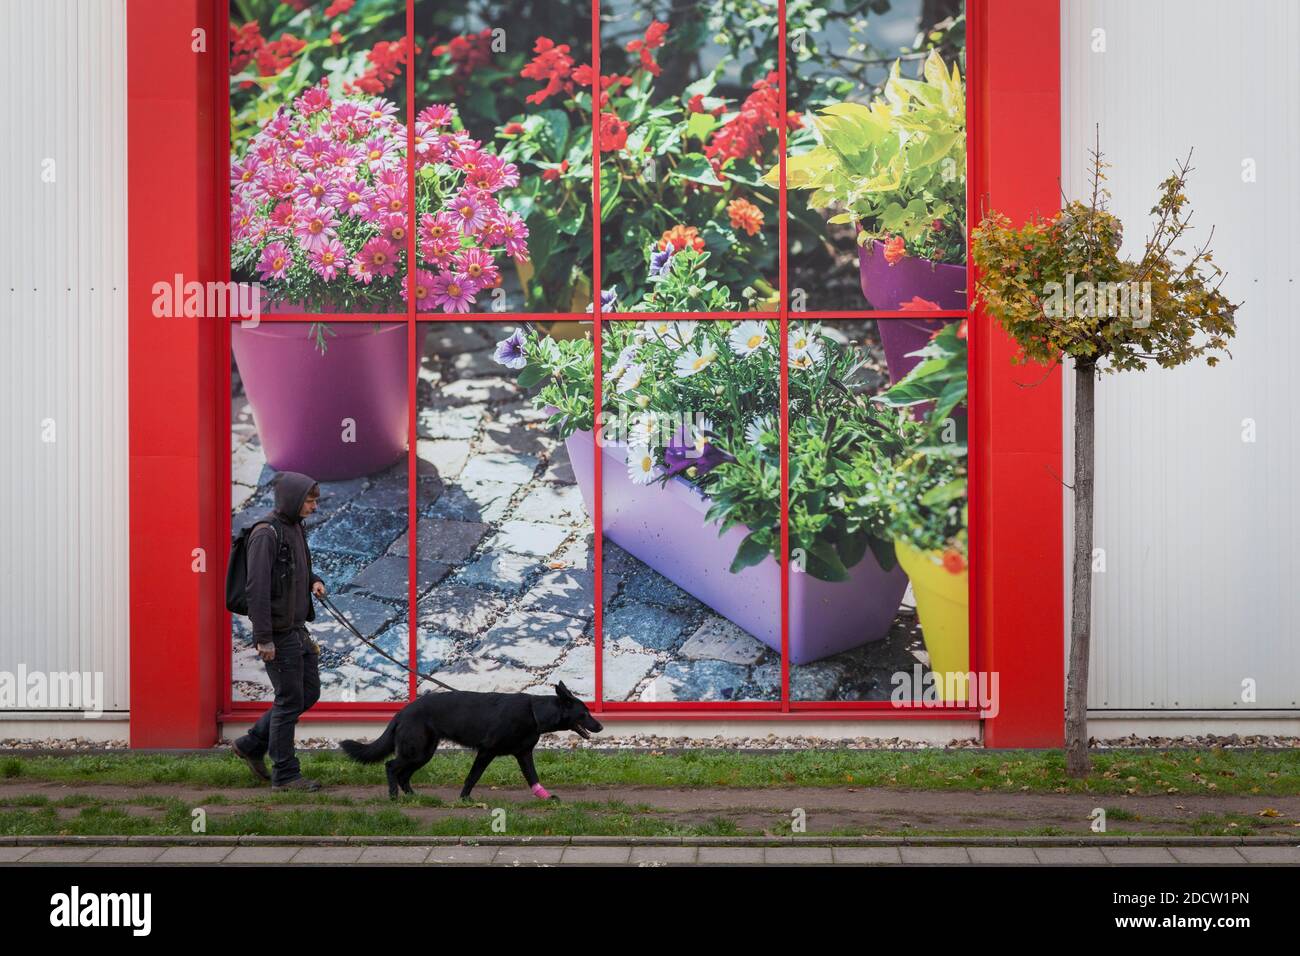 Uomo con il cane che cammina accanto a un poster pubblicitario in un centro giardino nel distretto di Kalk, Colonia, Germania. Mann mit Hund laeuft an einem Werbeplakat Foto Stock